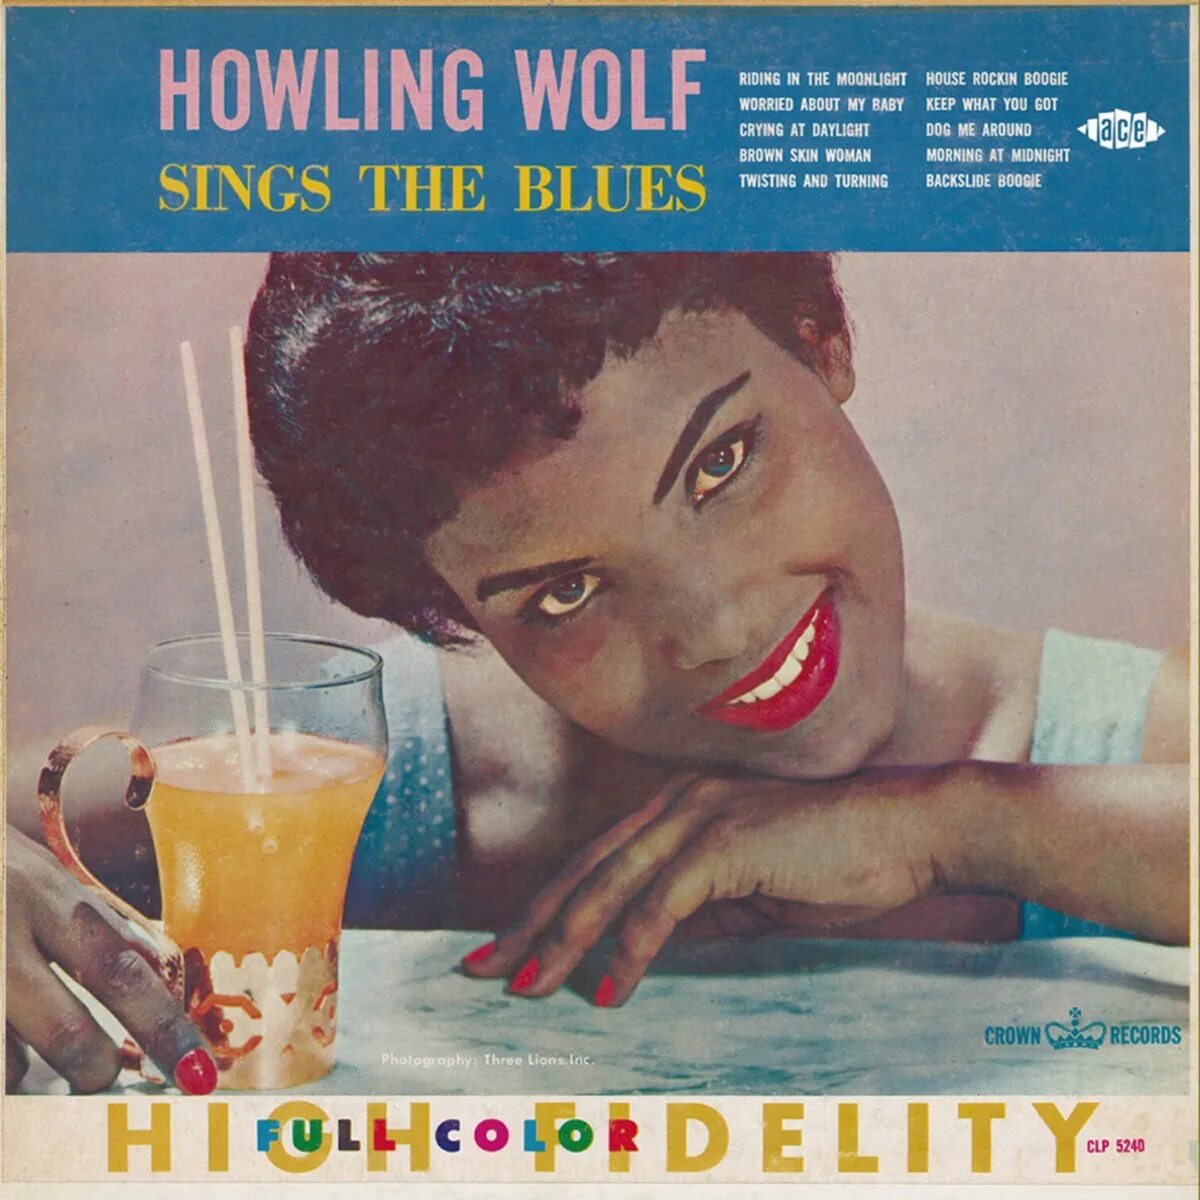 Sings the blues. Howlin' Wolf - Howlin' Wolf (1962). Howlin' Wolf Howling Wolf Sings the Blues. Howlin' Wolf "Rockin' Chair". Howlin Wolf 1962 LP.